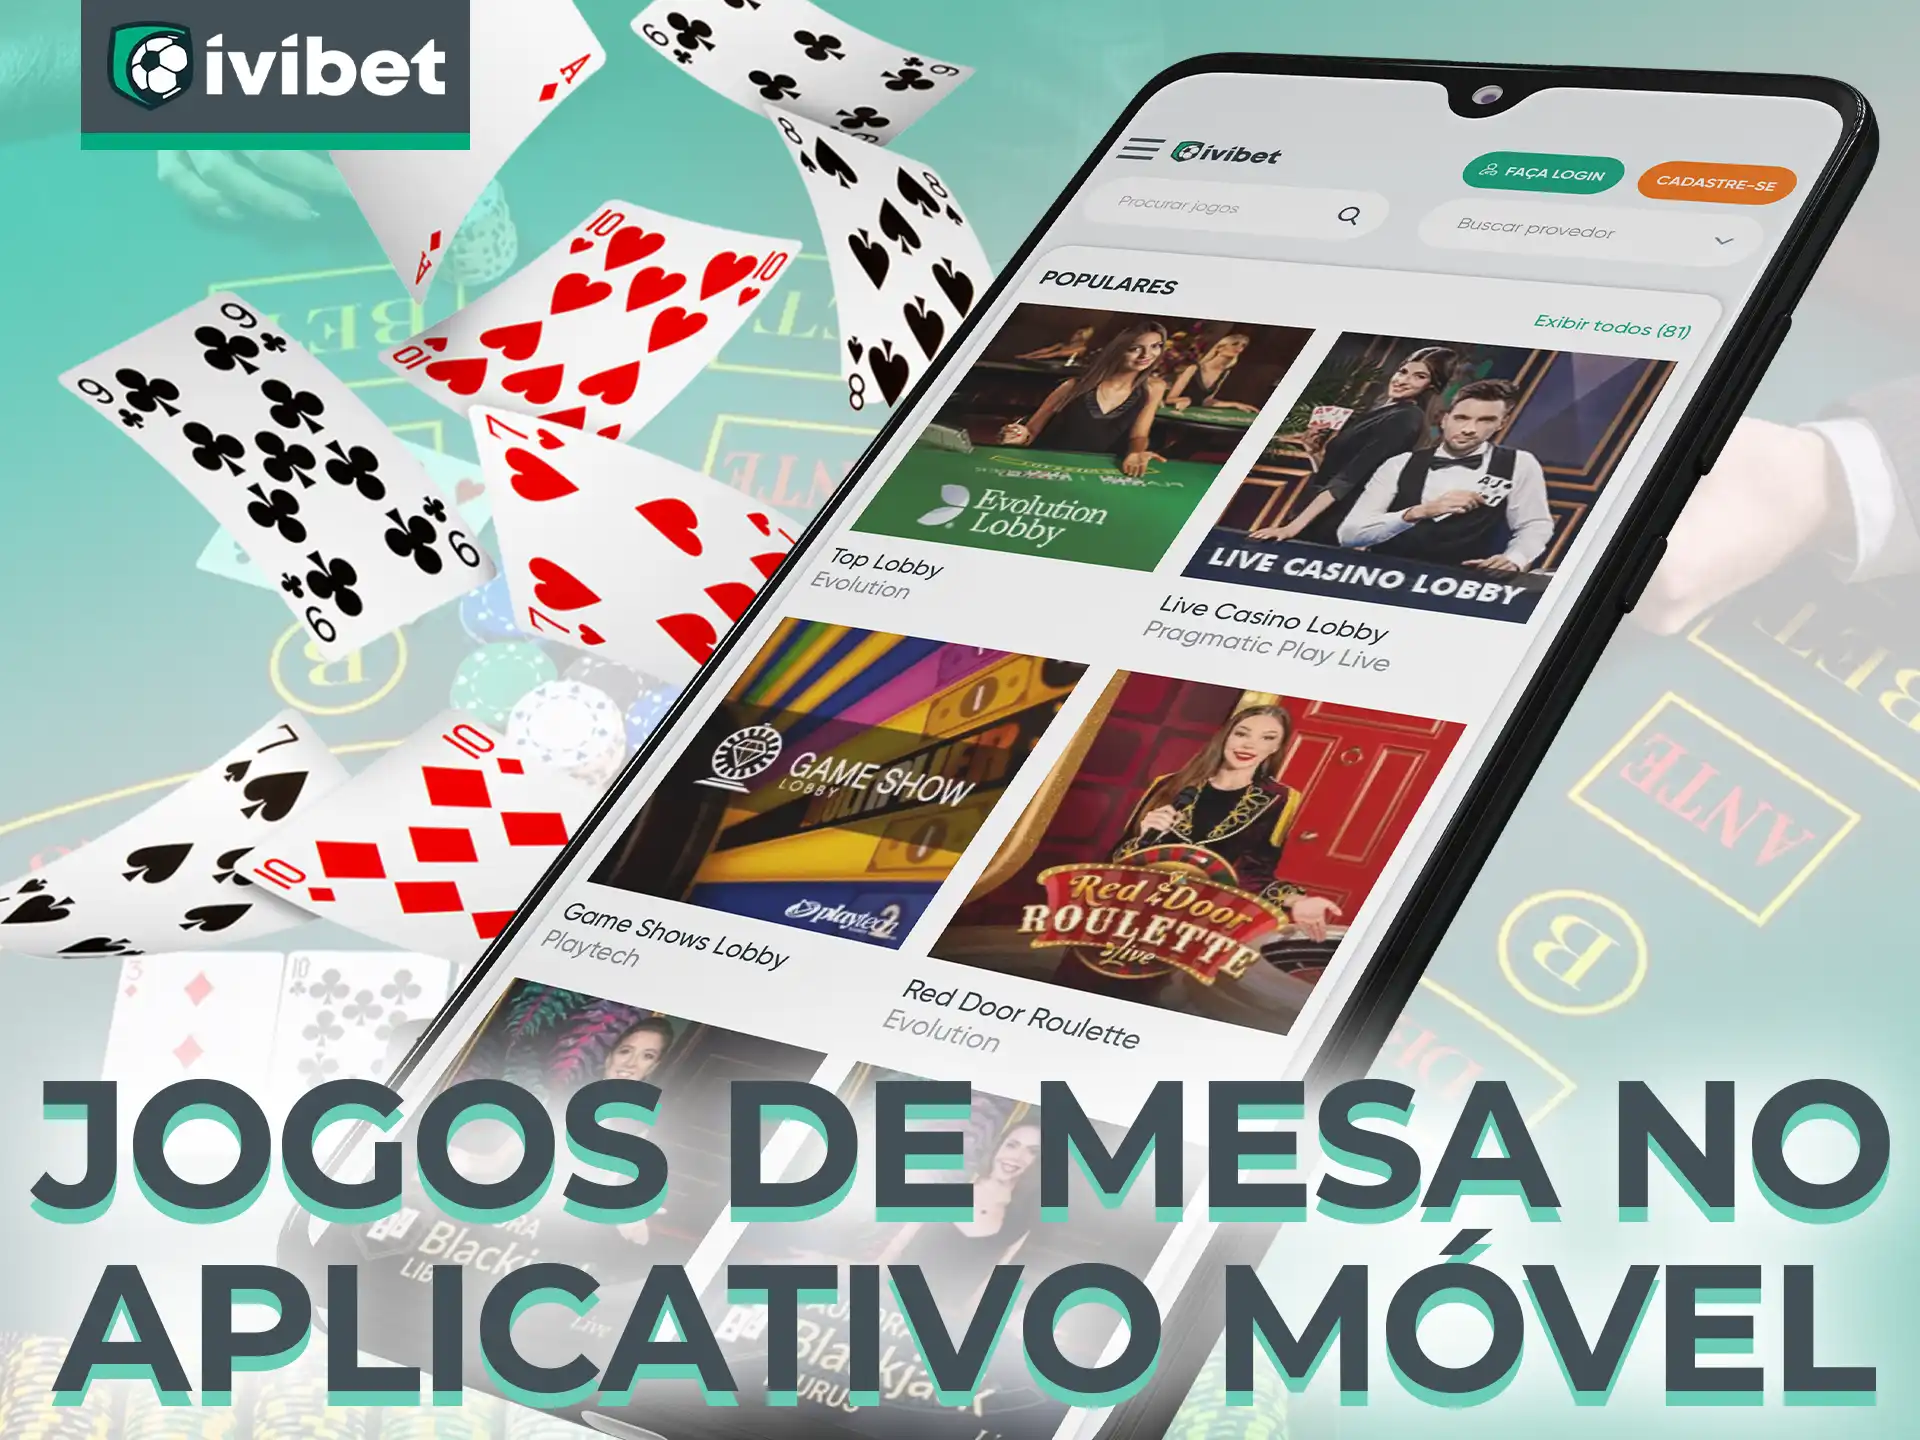 Instale o aplicativo móvel Ivibet para jogar seus jogos de mesa favoritos diretamente de seu telefone.